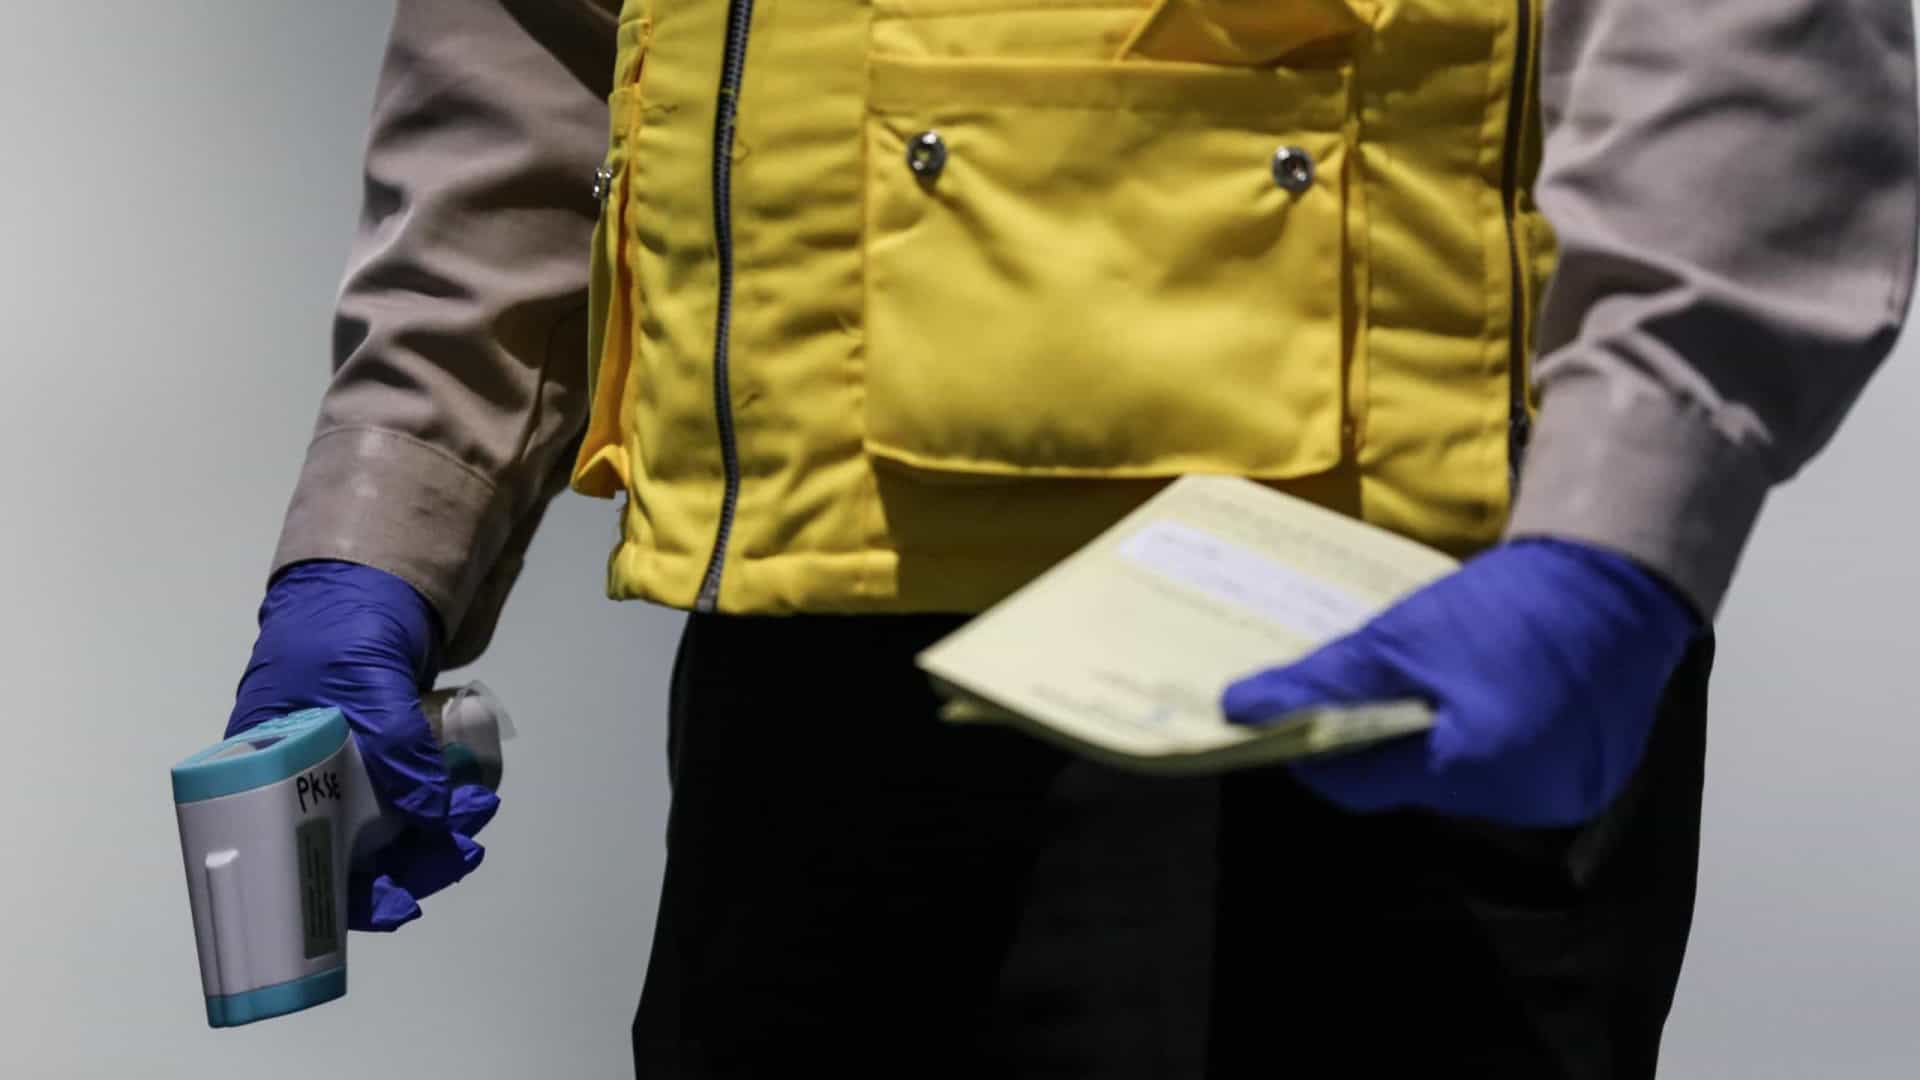 França confirma 1.º caso de varíola dos macacos. É um homem com 29 anos